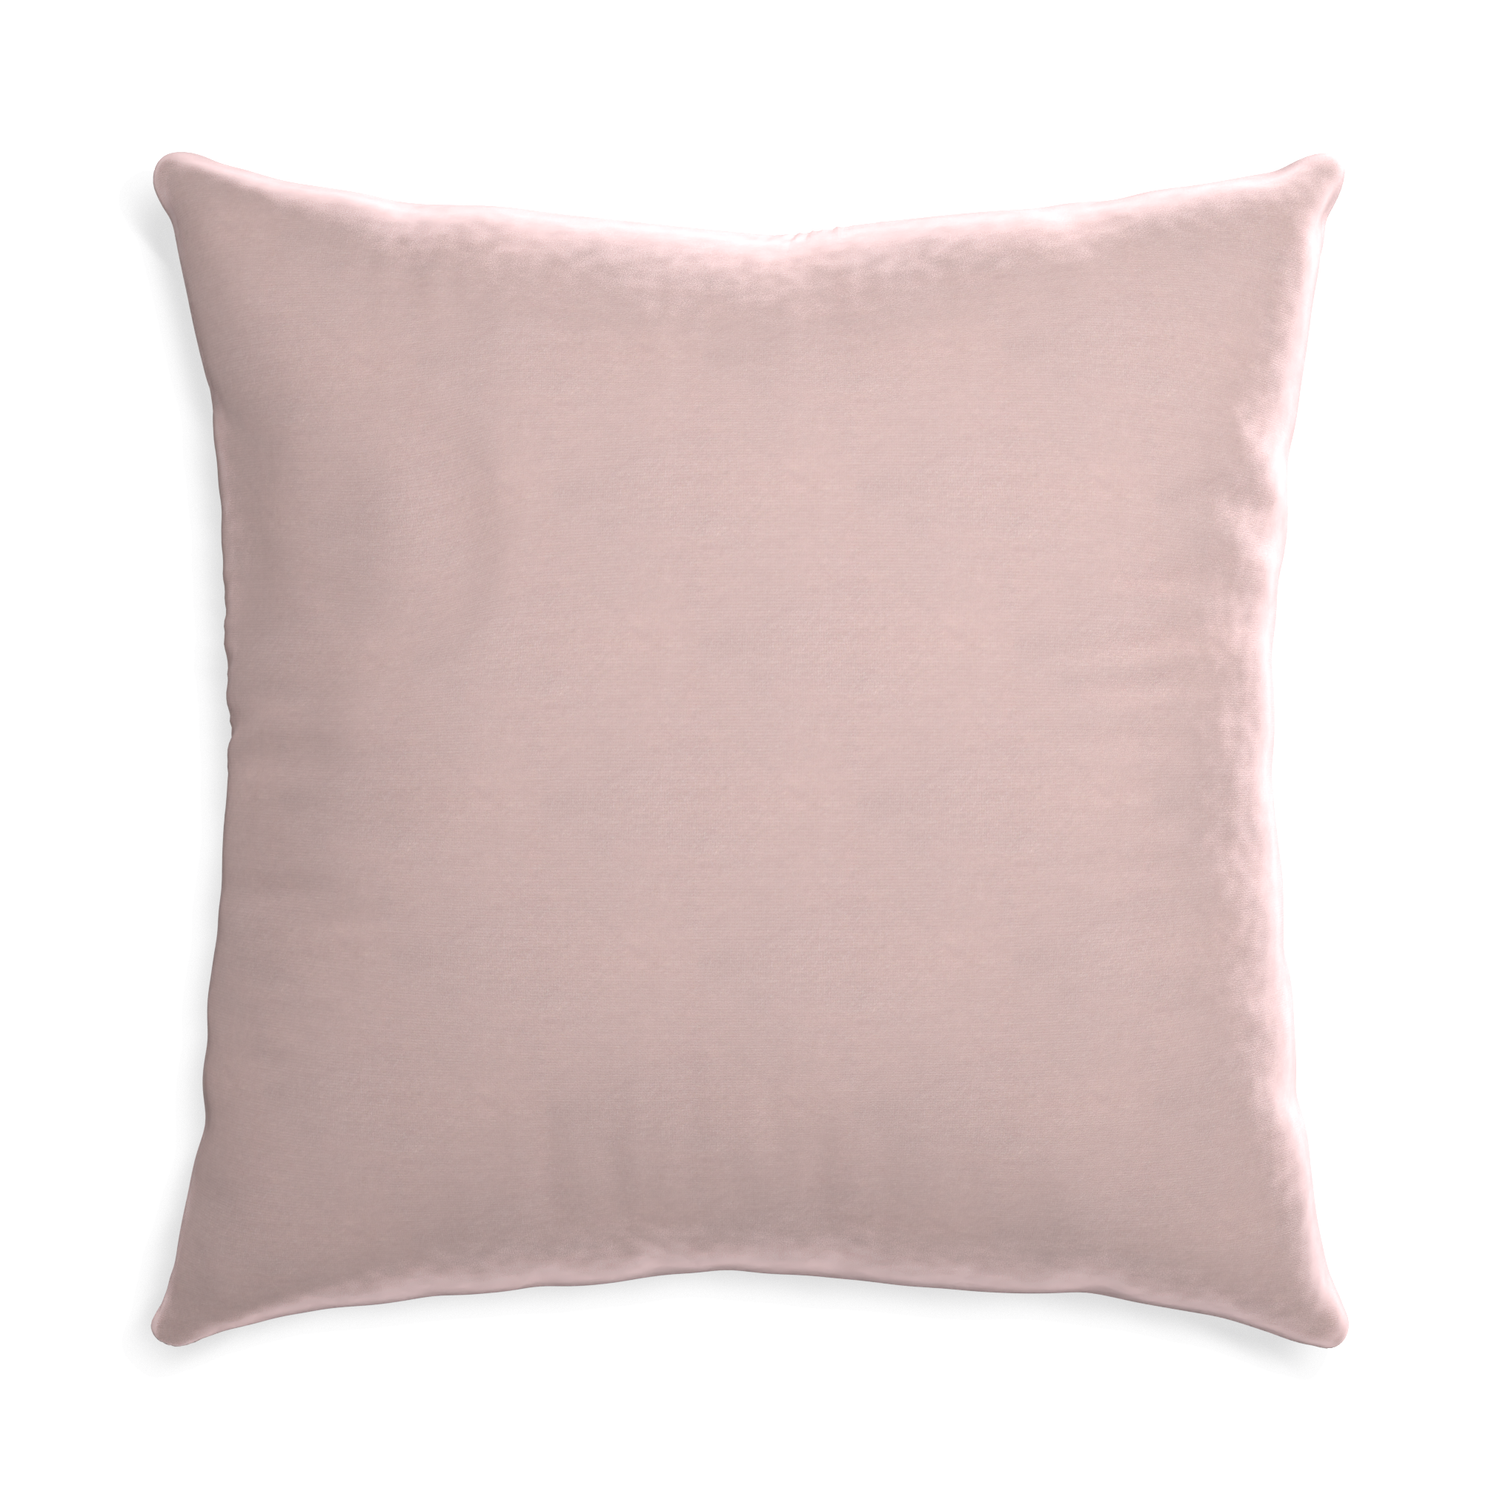 Euro-sham rose velvet custom pillow with none on white background